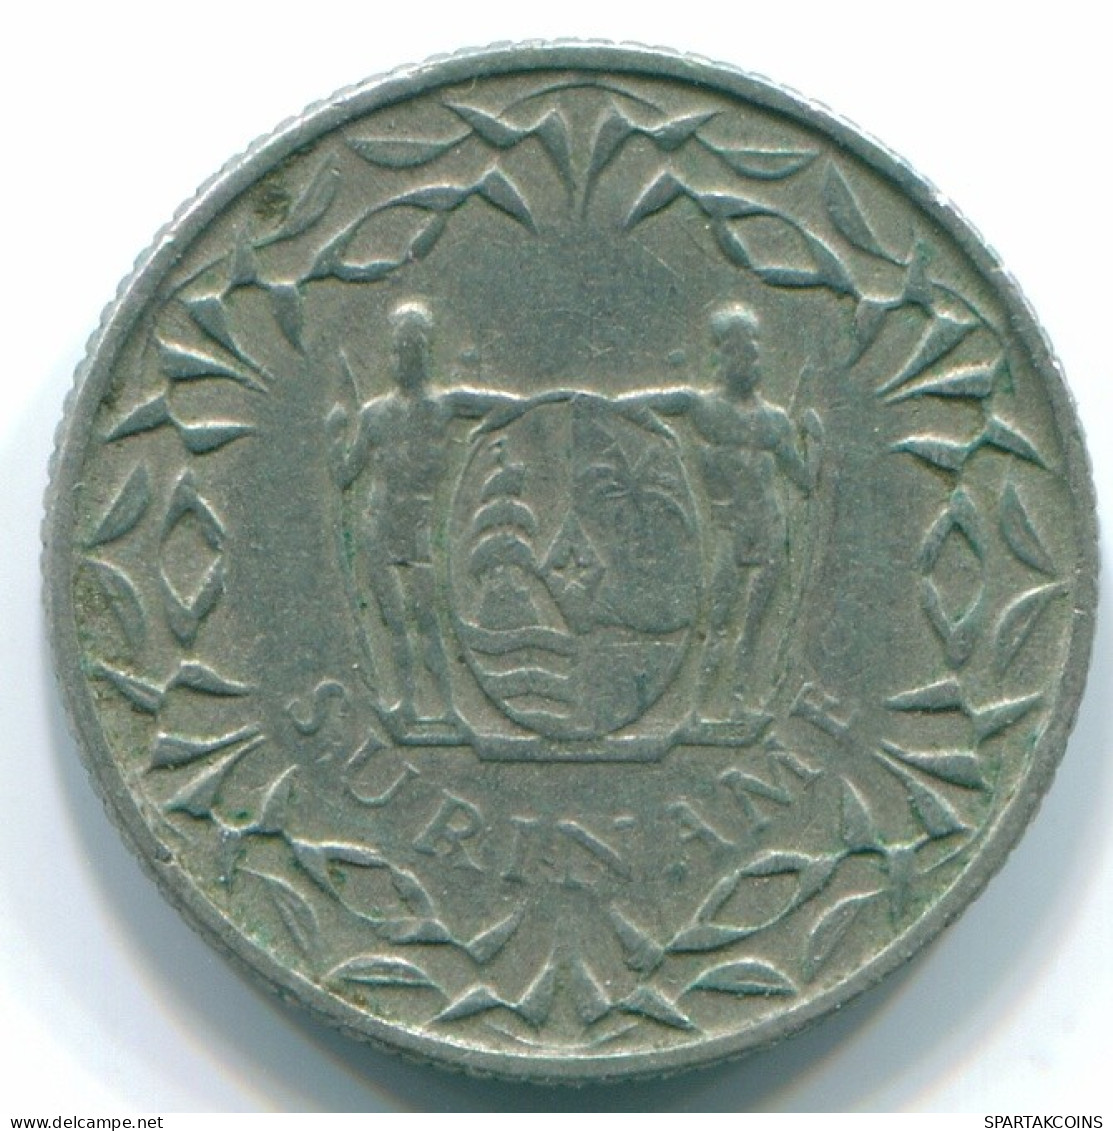 10 CENTS 1962 SURINAM NIEDERLANDE Nickel Koloniale Münze #S13214.D.A - Suriname 1975 - ...